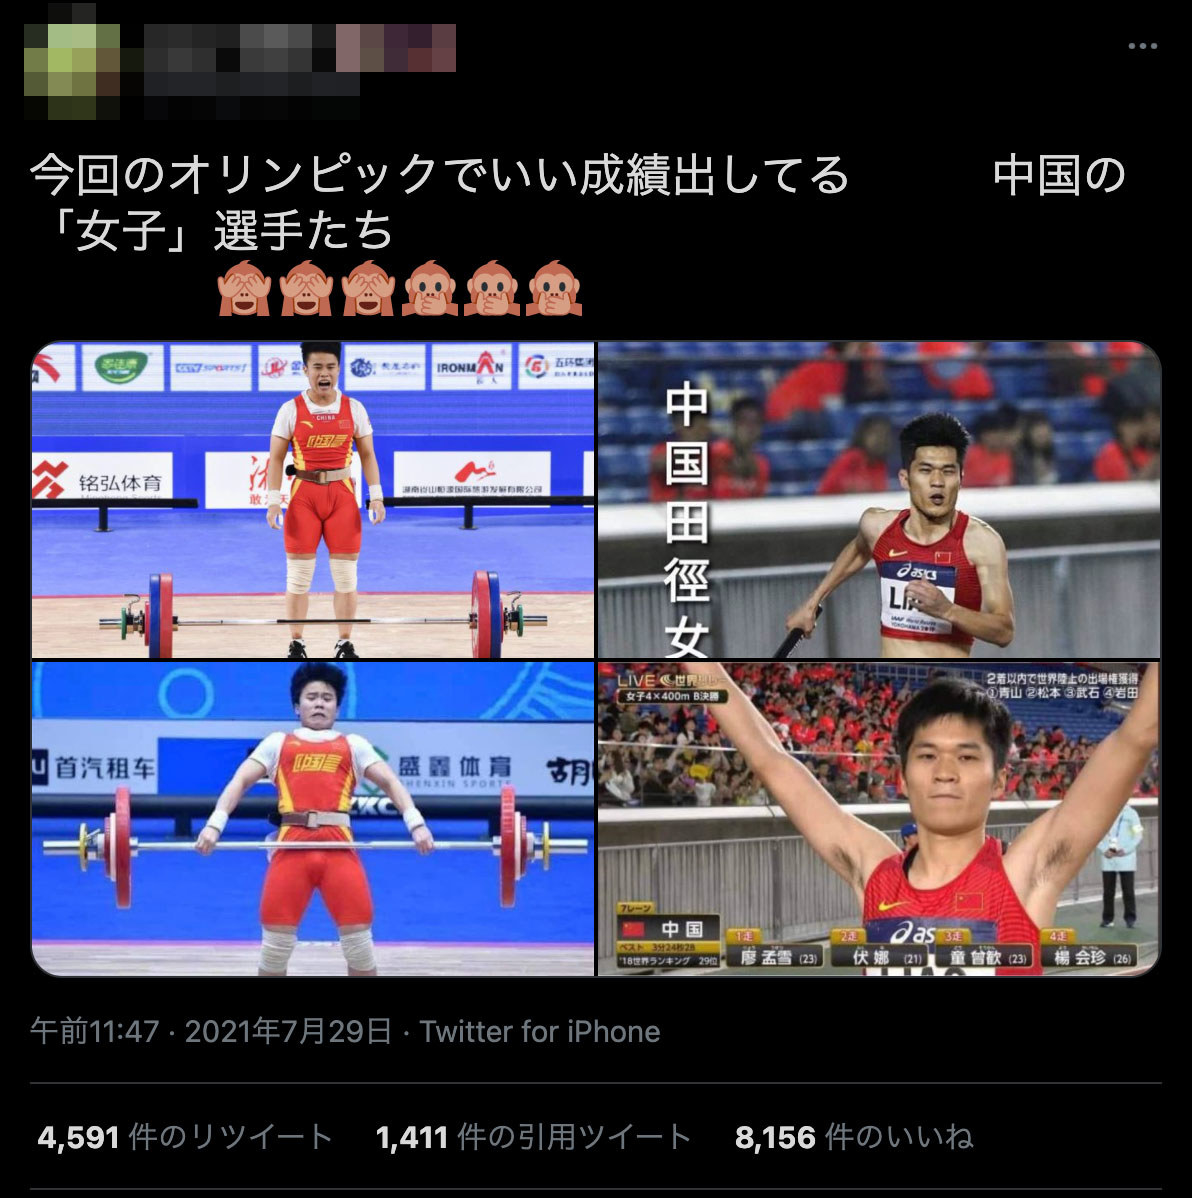 東京五輪めぐり 中国 女子 選手たち と画像が拡散 トランスジェンダーへの差別投稿 誤情報も